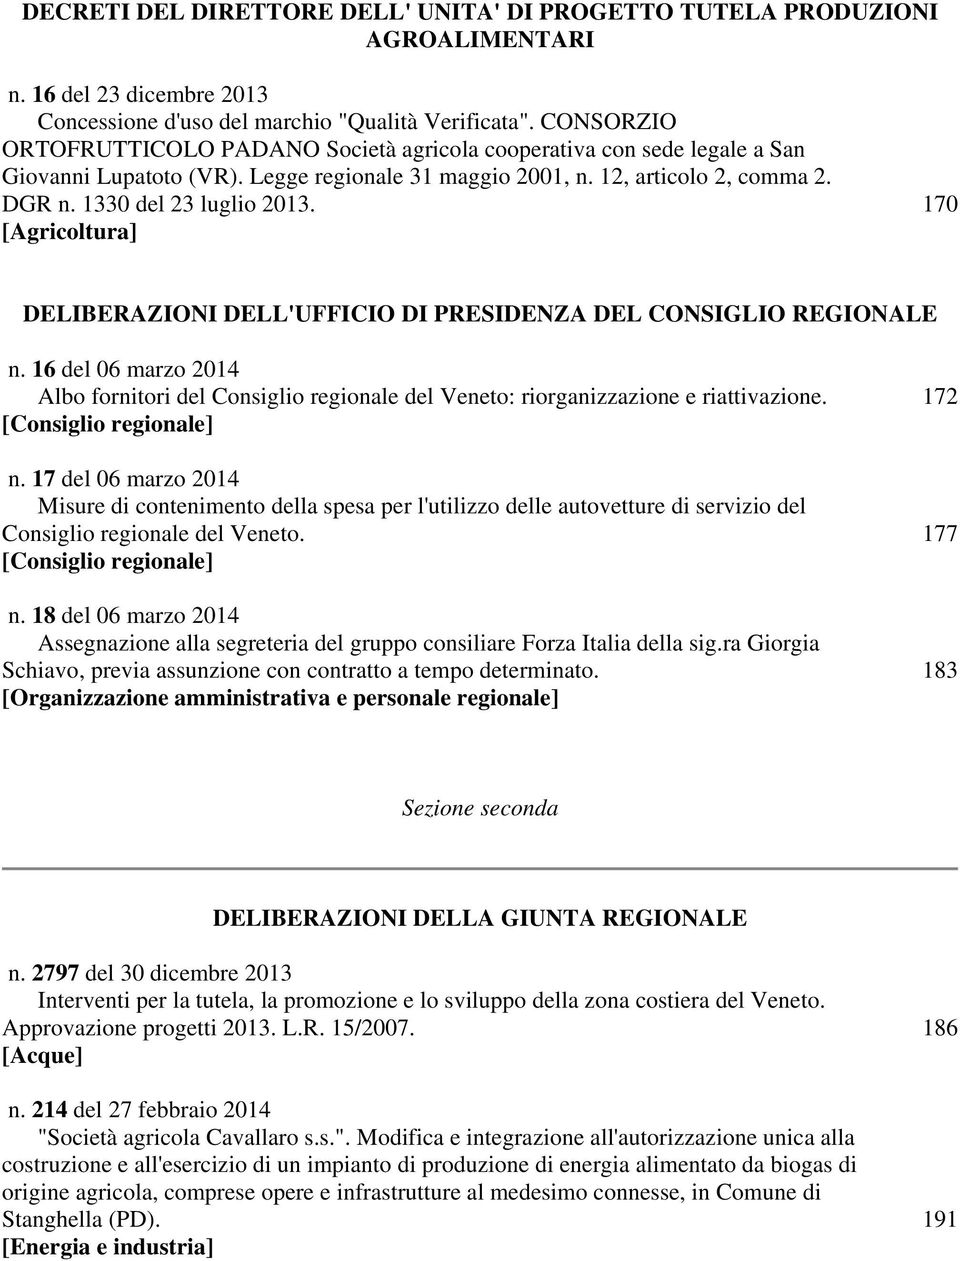 170 [Agricoltura] DELIBERAZIONI DELL'UFFICIO DI PRESIDENZA DEL CONSIGLIO REGIONALE n. 16 del 06 marzo 2014 Albo fornitori del Consiglio regionale del Veneto: riorganizzazione e riattivazione.